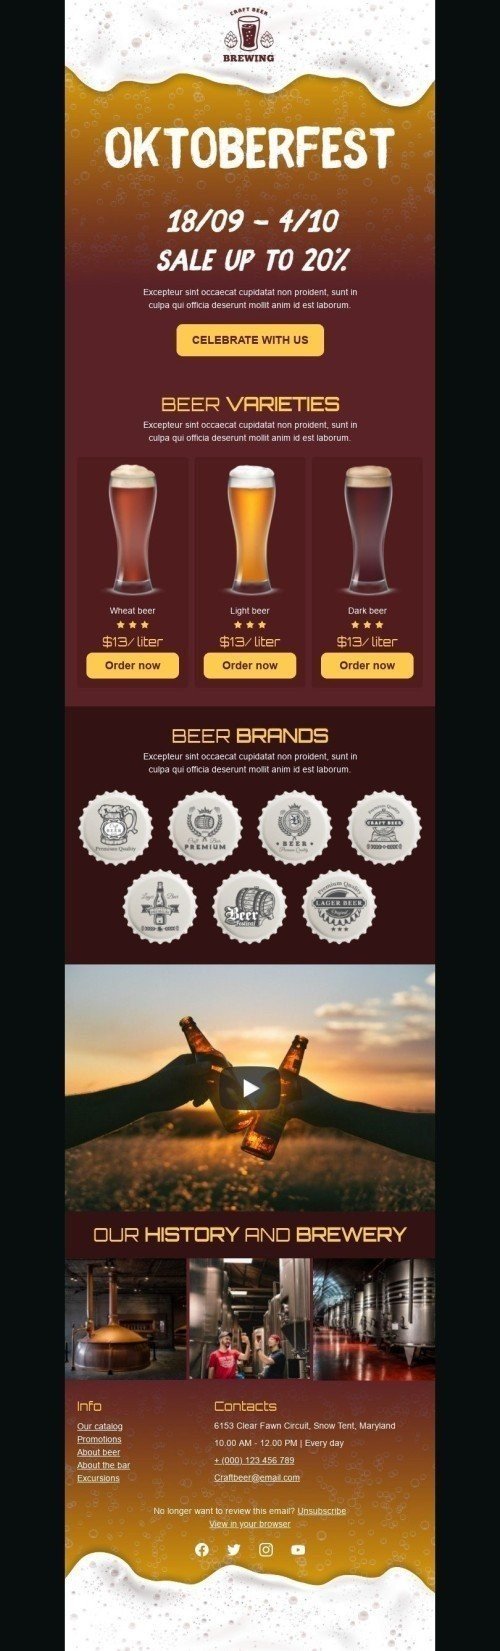 Plantilla de correo electrónico «Cerveza artesanal» de Oktoberfest para la industria de Bebidas Vista de móvil